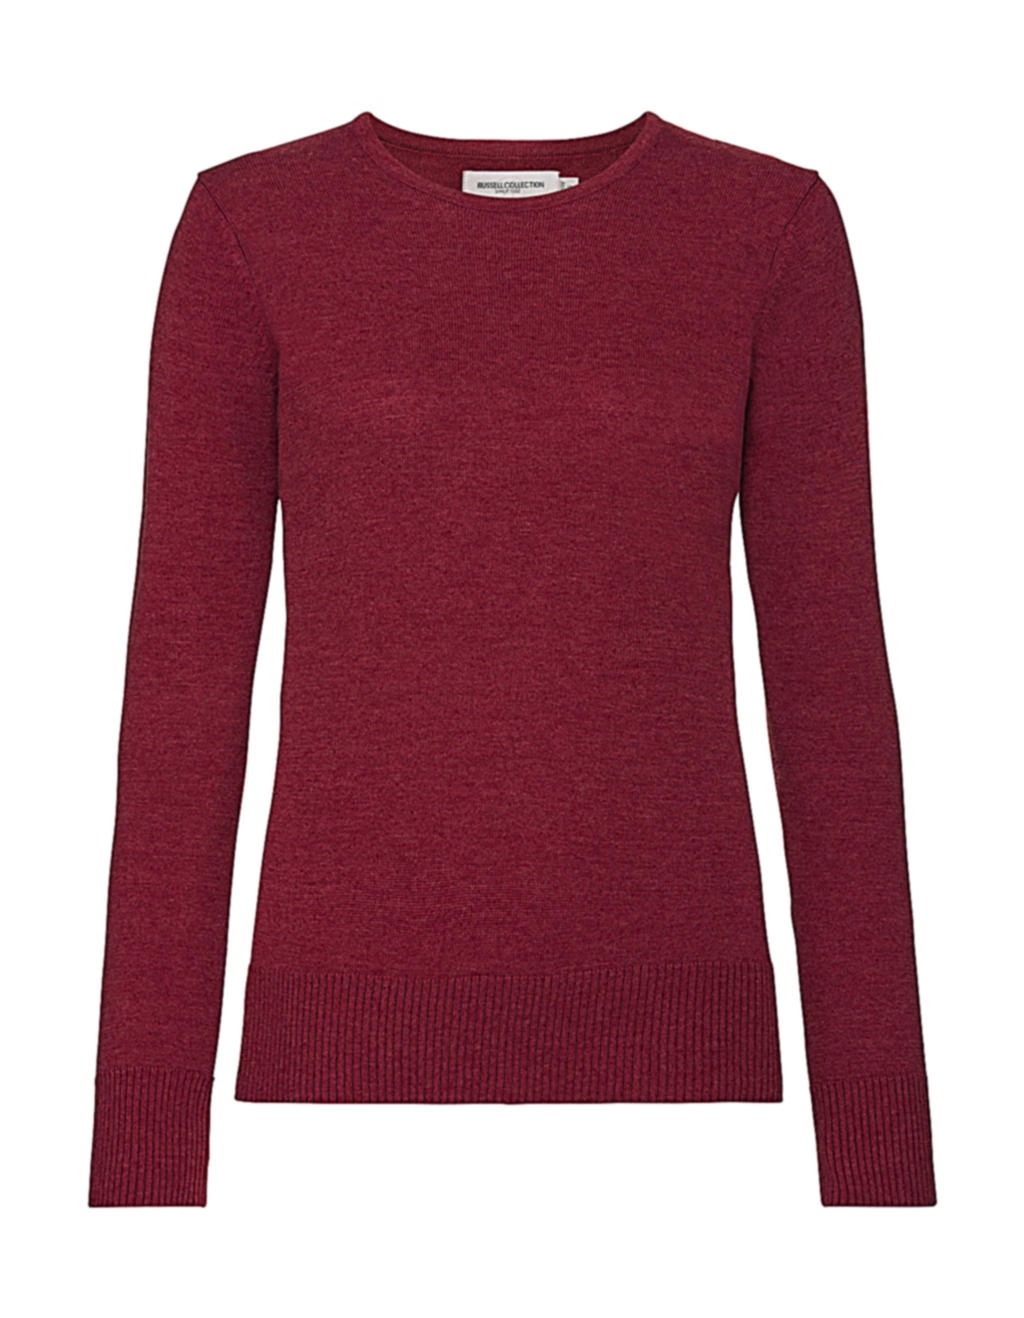 Ladies` Crew Neck Knitted Pullover zum Besticken und Bedrucken in der Farbe Cranberry Marl mit Ihren Logo, Schriftzug oder Motiv.